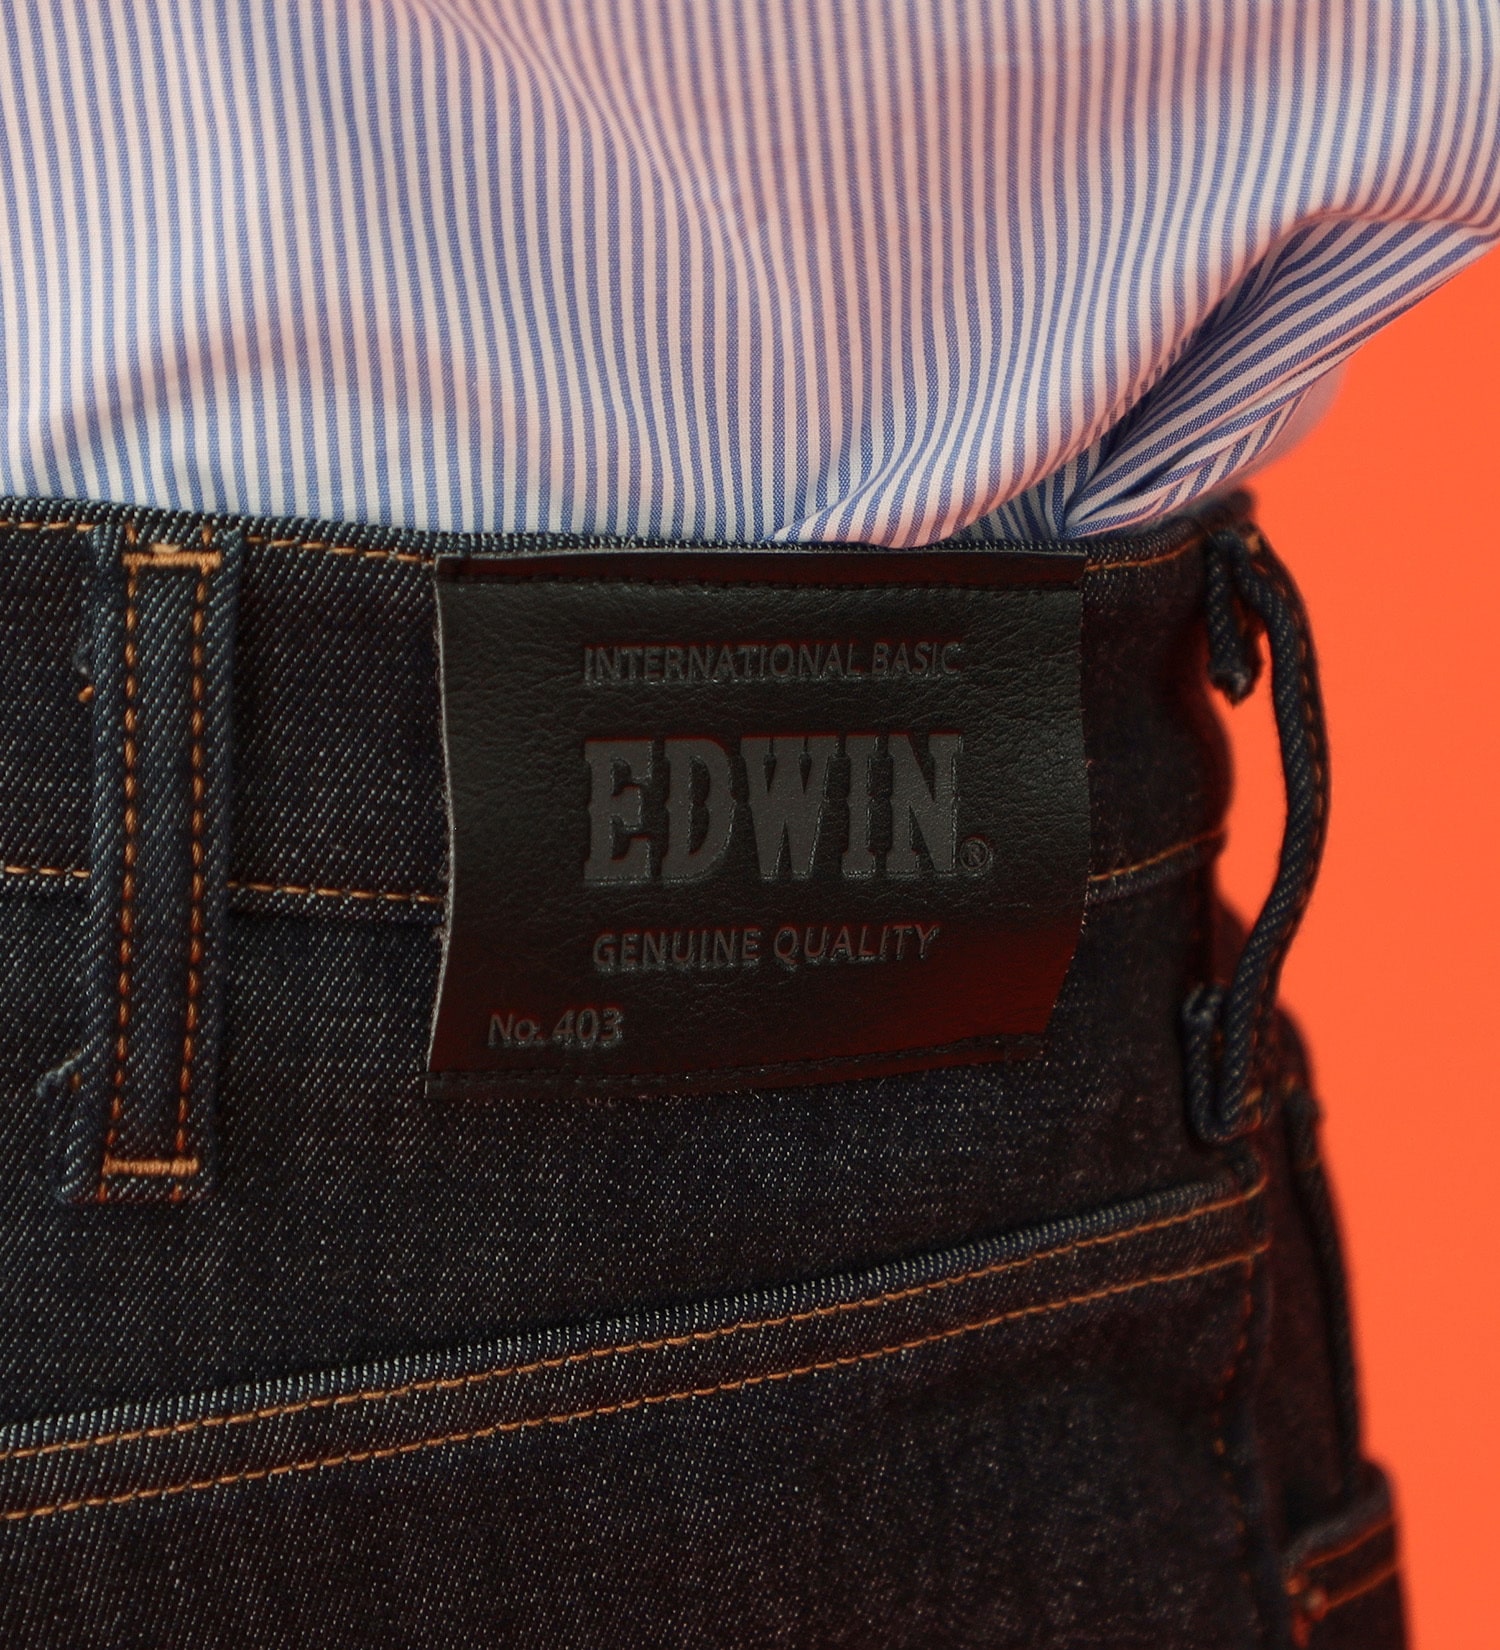 EDWIN(エドウイン)の【BLACKFRIDAY】【大きいサイズ】2層で暖かい EDWIN インターナショナルベーシック レギュラーストレートパンツ403 WILD FIRE 2層ボンディング構造 【暖】|パンツ/パンツ/メンズ|インディゴブルー